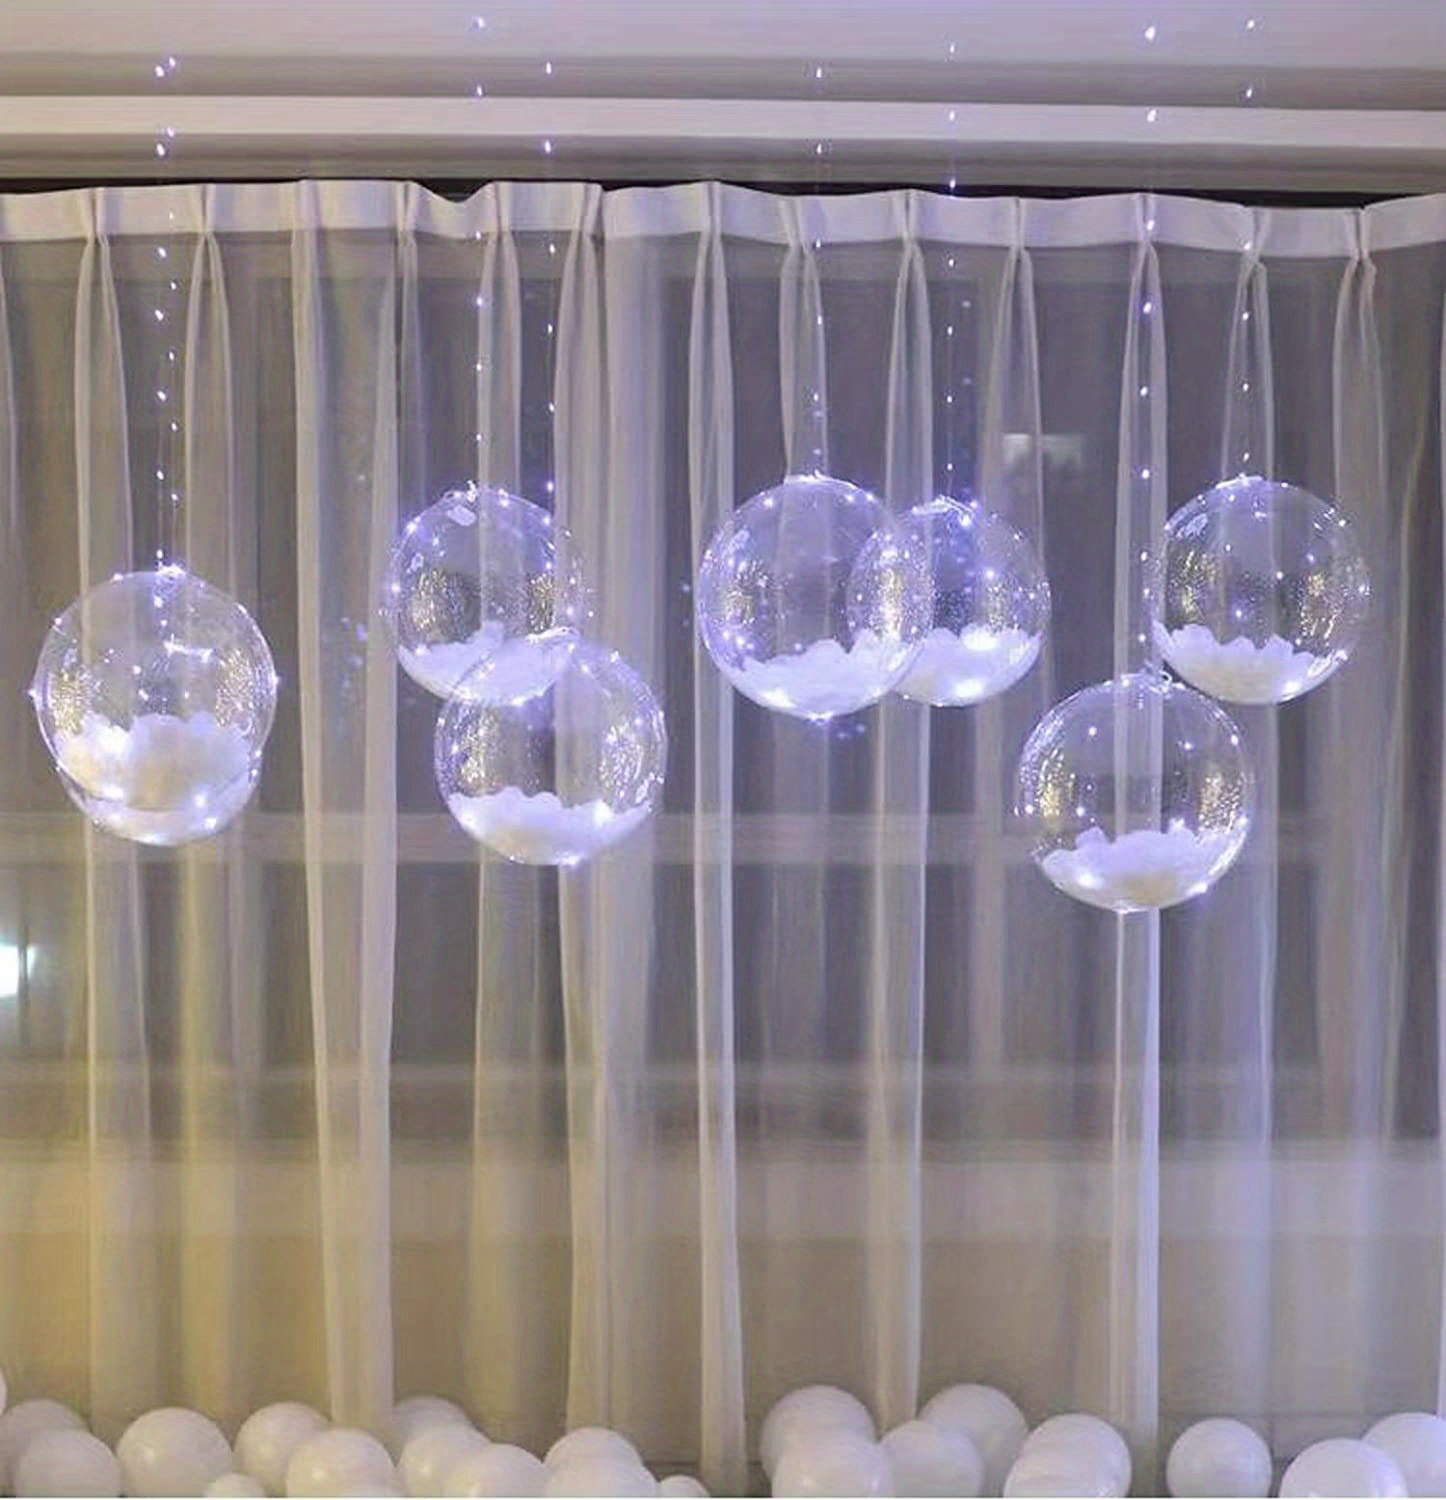 Globos LED, 10 unidades, globos de 20 pulgadas iluminados estilo helio,  globos de burbujas brillantes para Navidad, boda, cumpleaños, día de San